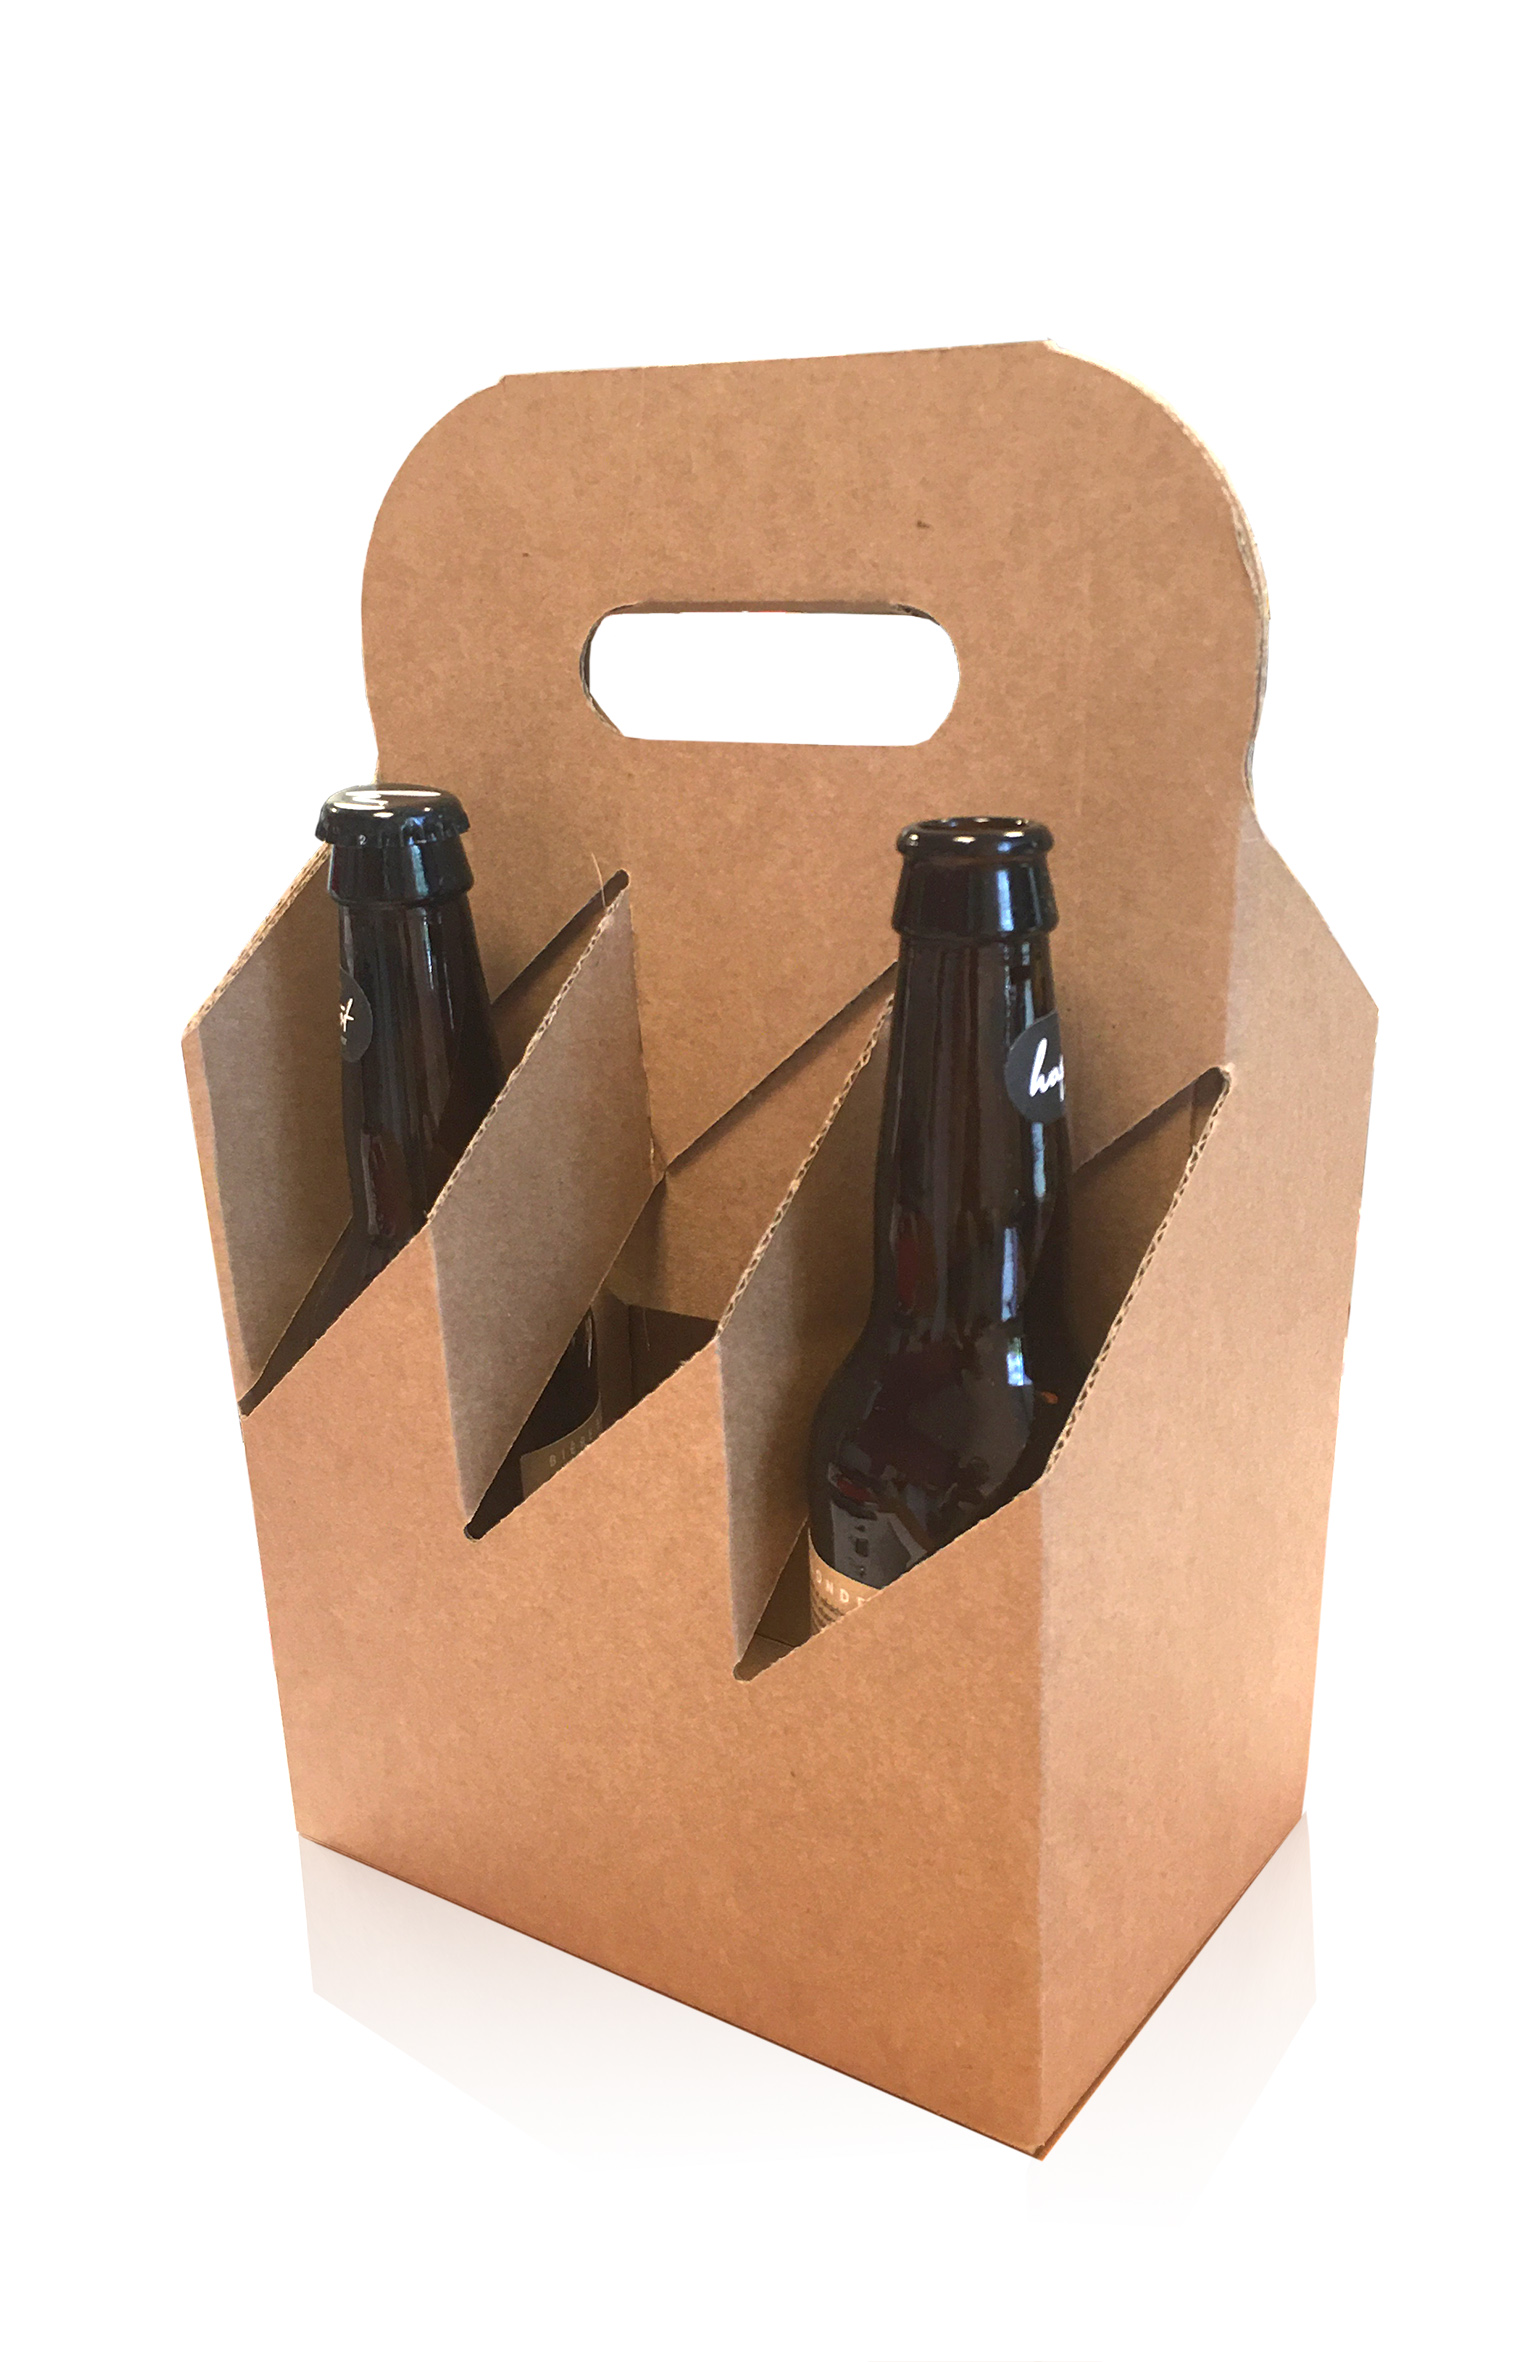 Coffret carton kraft pour 6 bieres type LONG NECK